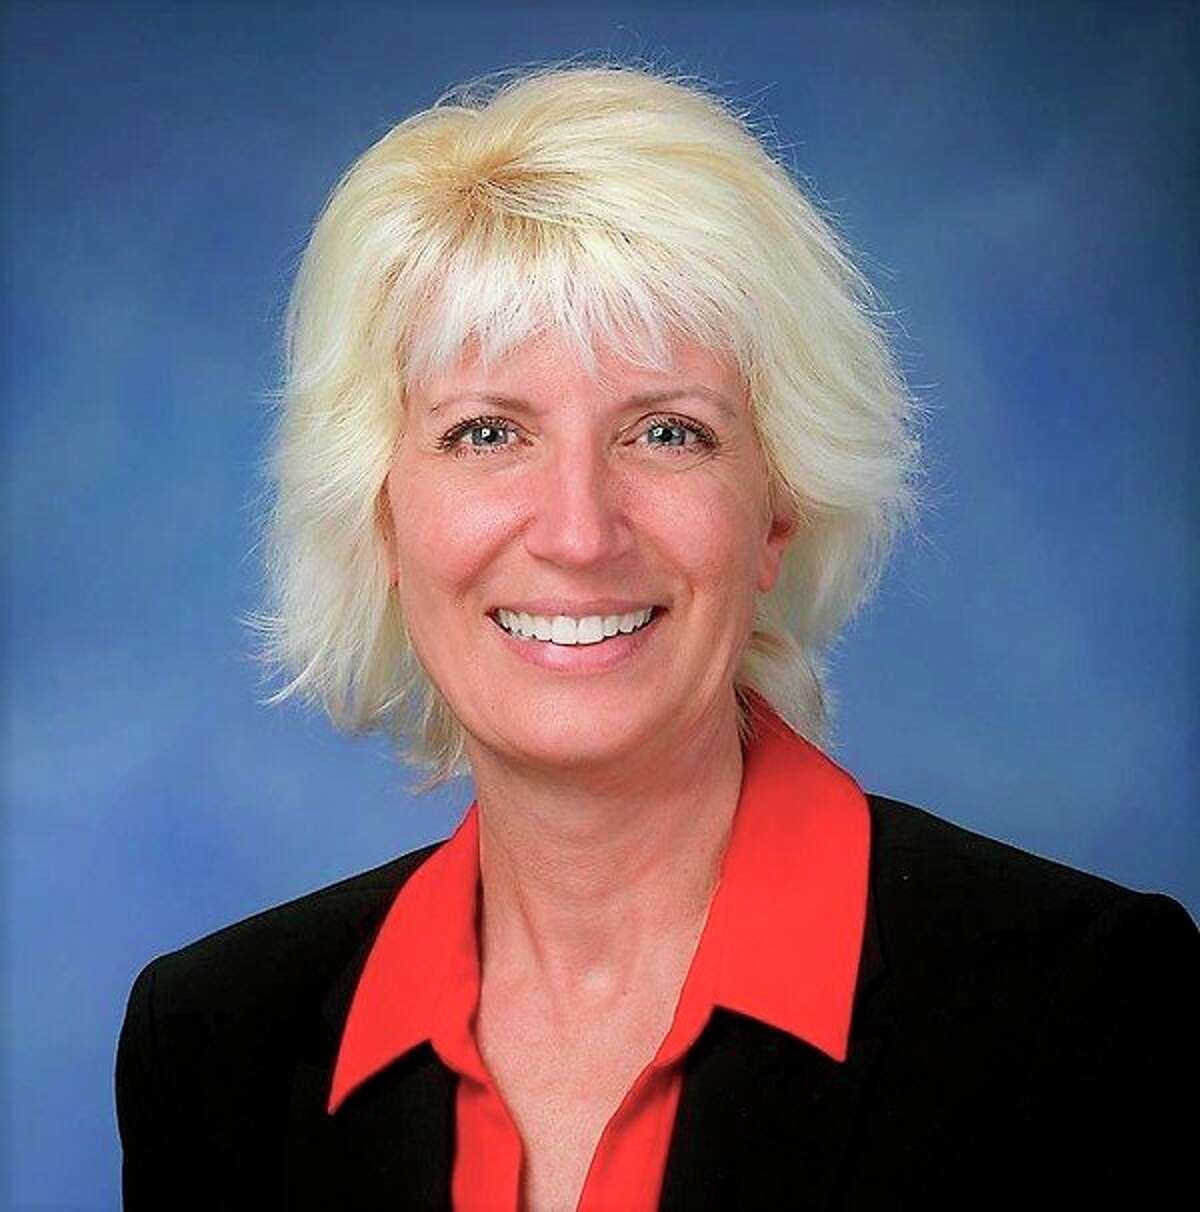 State Rep. Annette Glenn